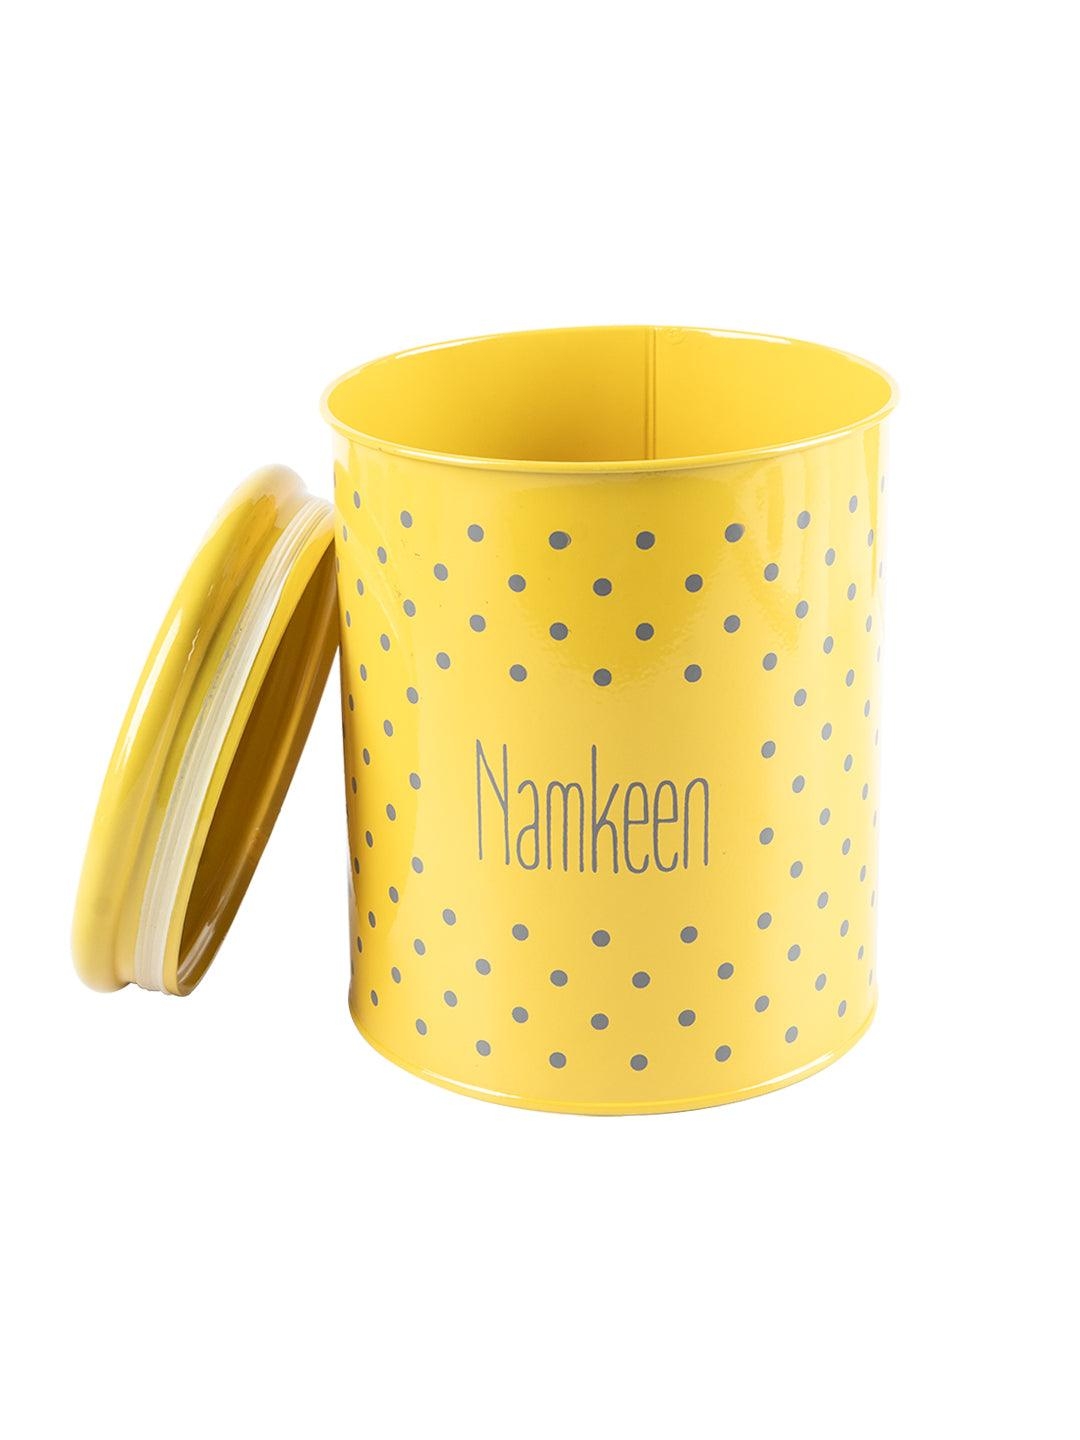 Market 99 | Namkeen Jar With Lid - (Yellow, 1700mL) 1